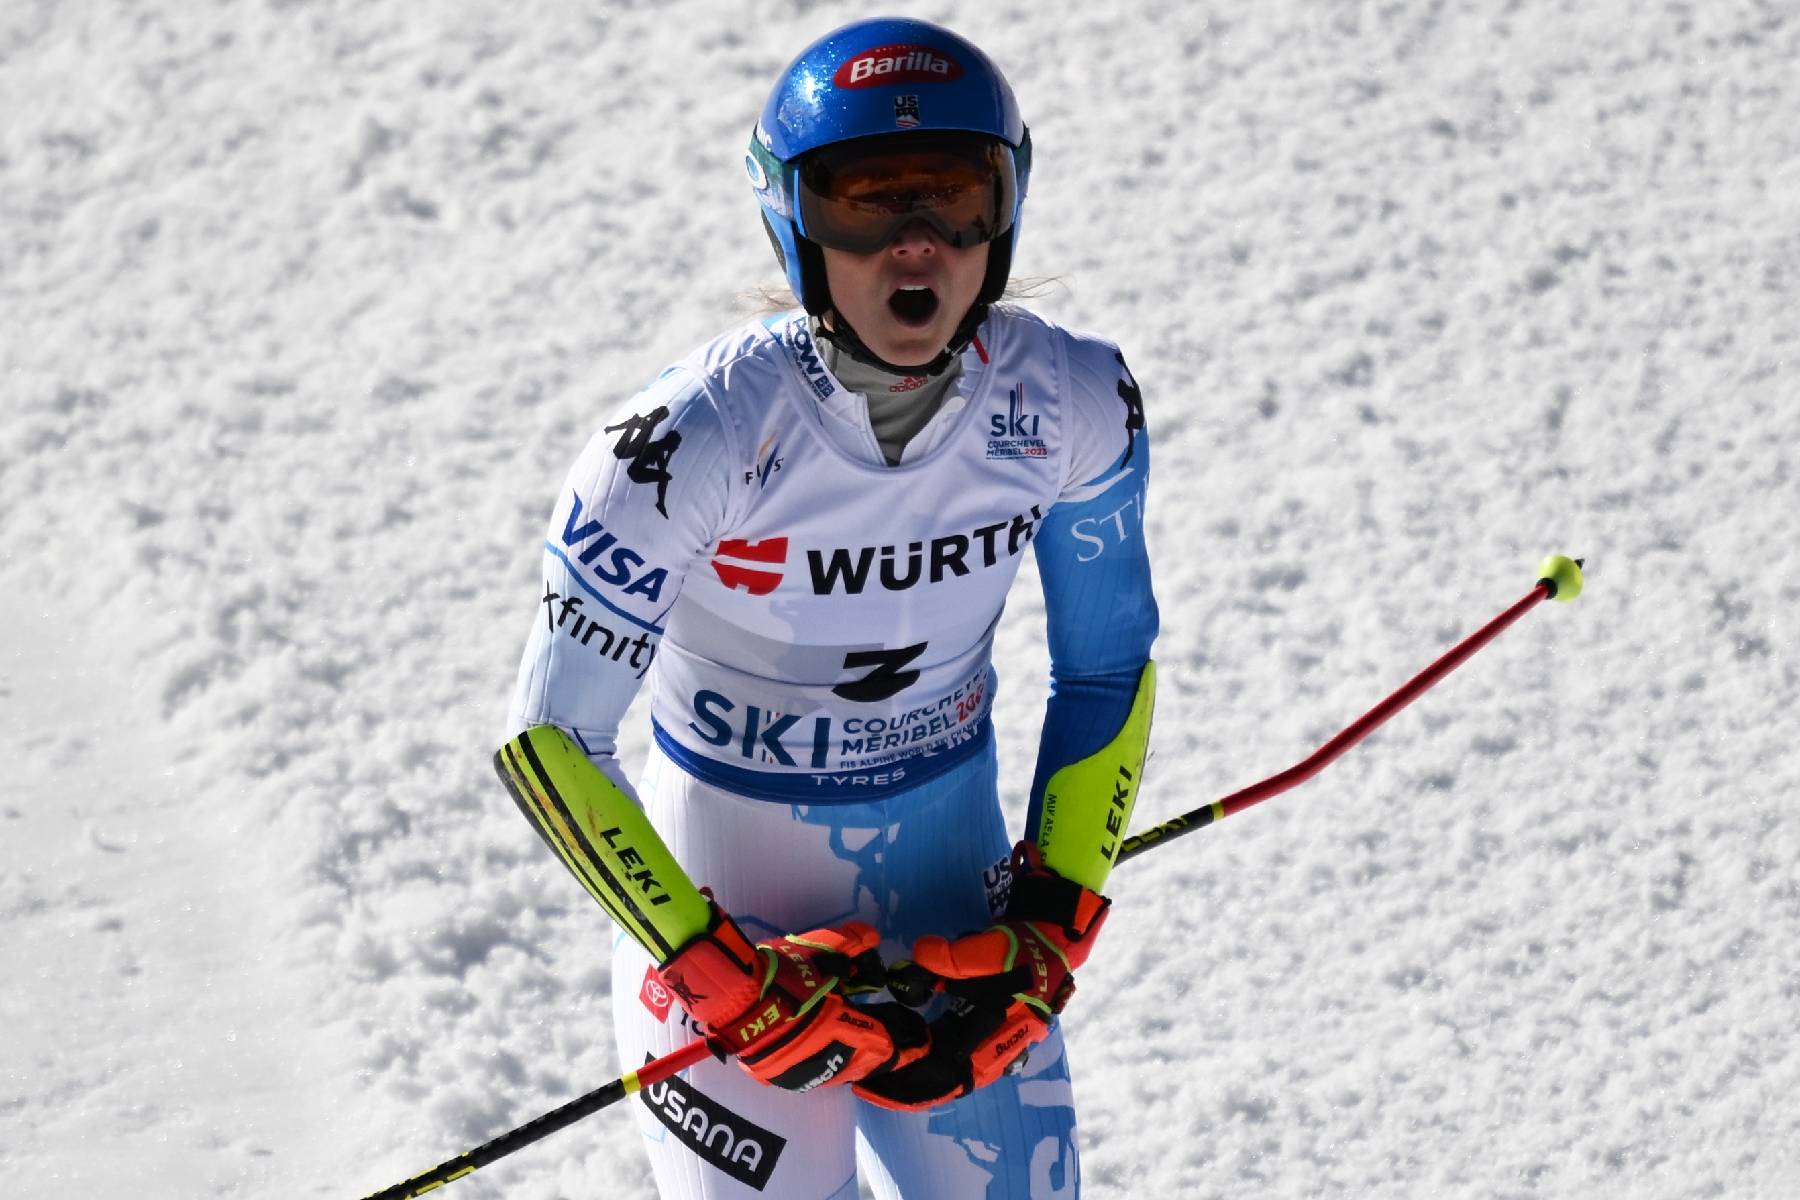 Mondiaux de ski alpin: Shiffrin reine du géant, cruelle sortie pour Worley